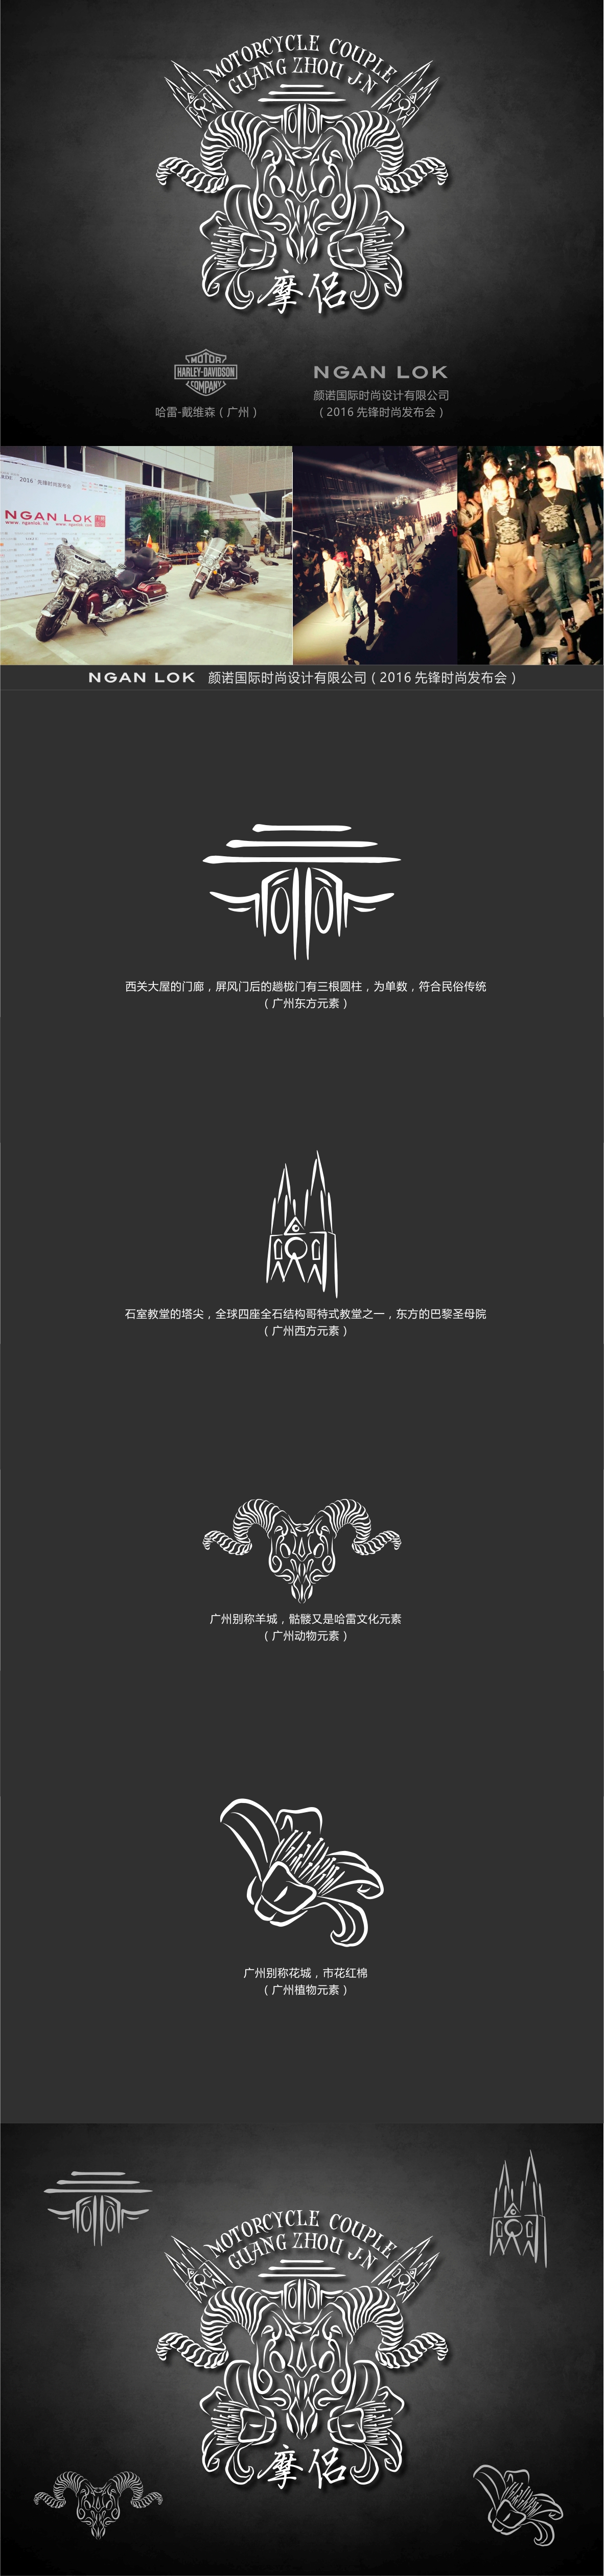 哈雷戴维森 哈雷 广州 Harley-Davidson harley guangzhou logo 图案 文化创意 徽标